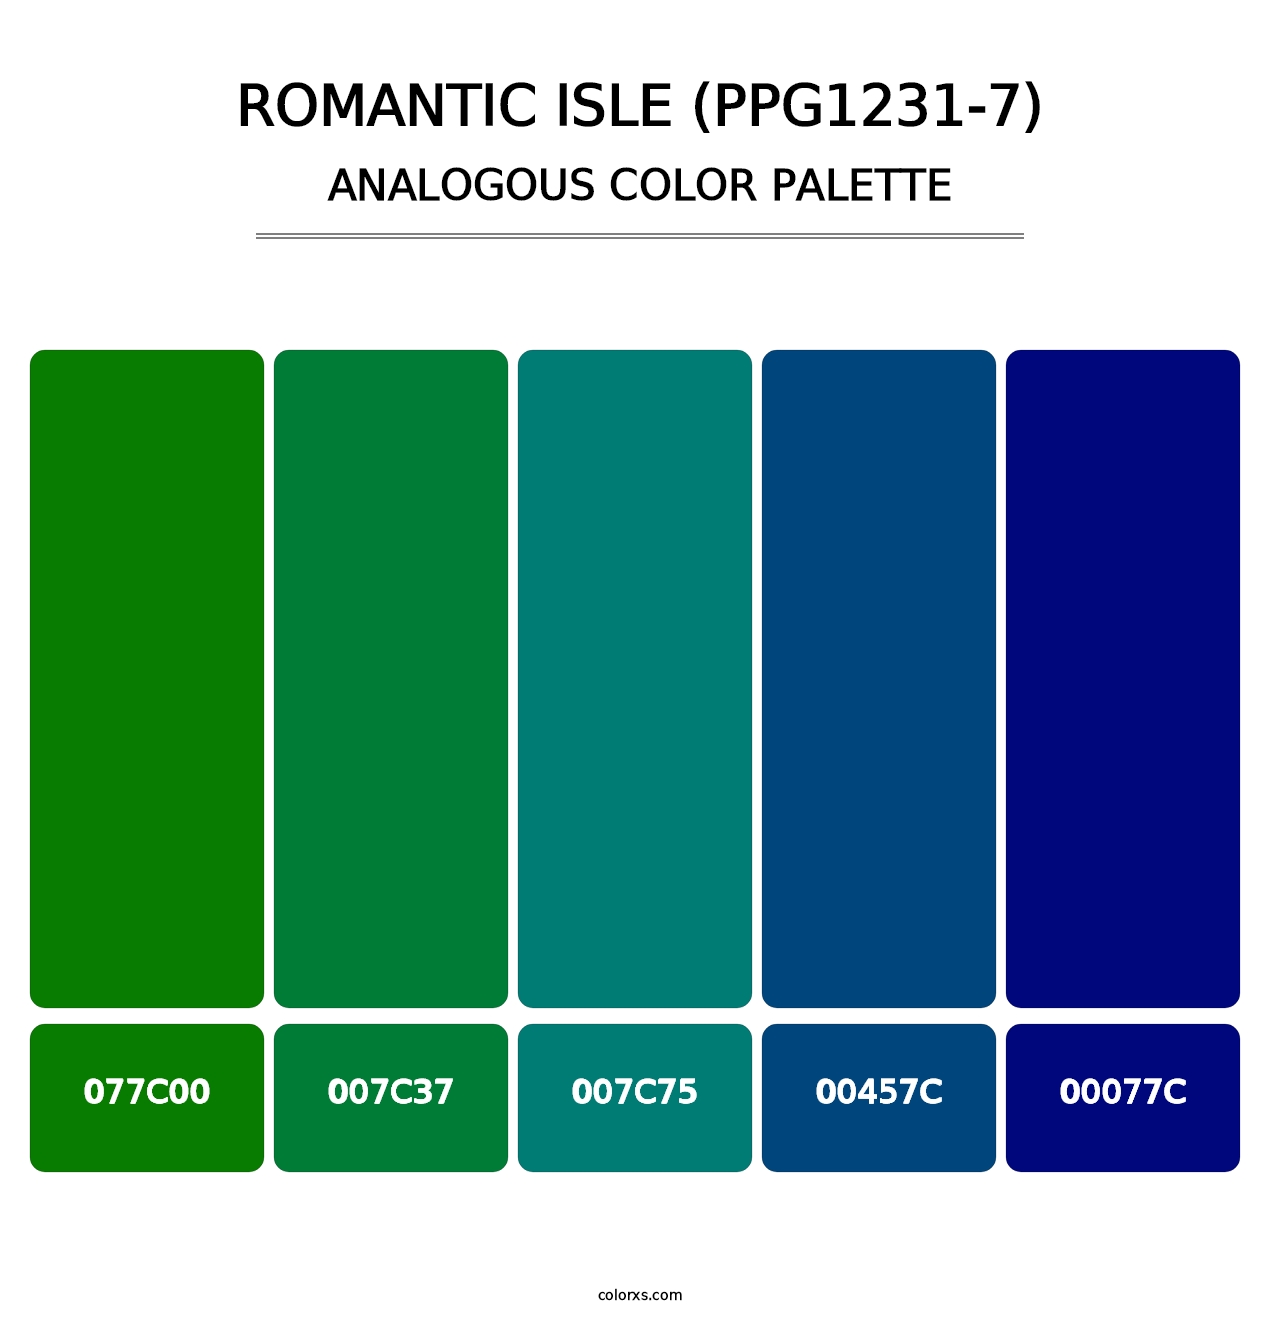 Romantic Isle (PPG1231-7) - Analogous Color Palette